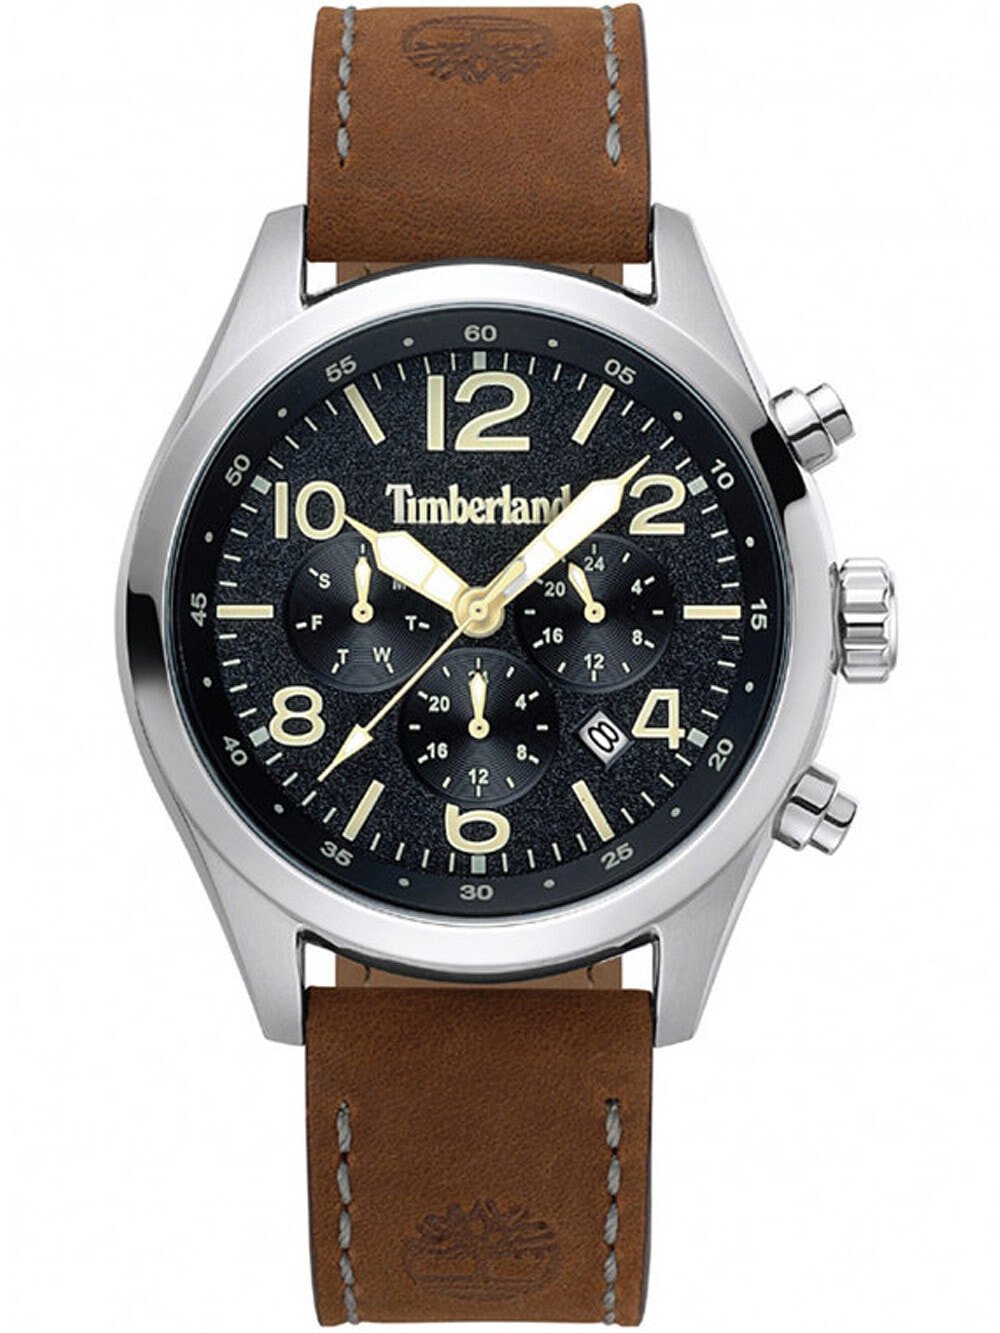 Мужские наручные часы с коричневым кожаным ремешком Timberland TBL15249JS.02 Ashmont Dual Time 46mm 5ATM